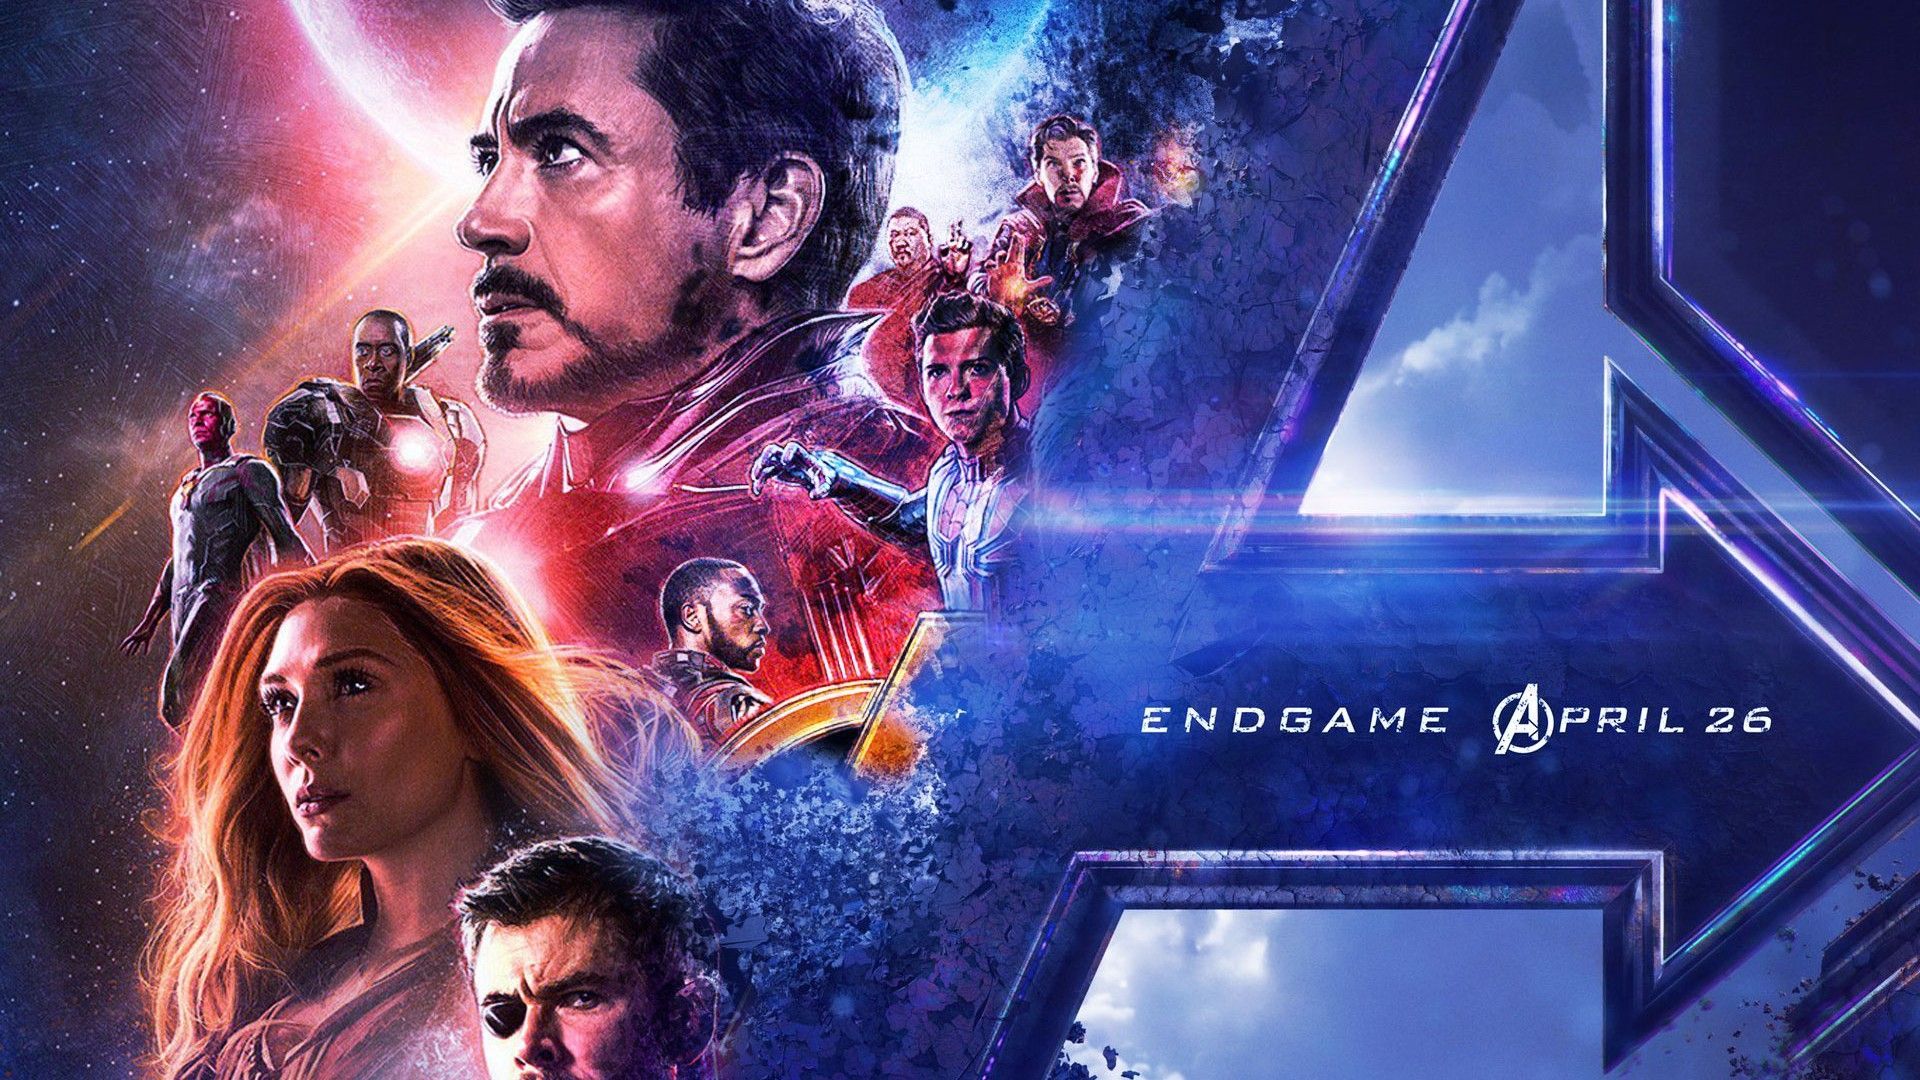 Avengers Endgame Background Movie Poster Wallpaper HD. Avengers film, Avengers, Movie posters